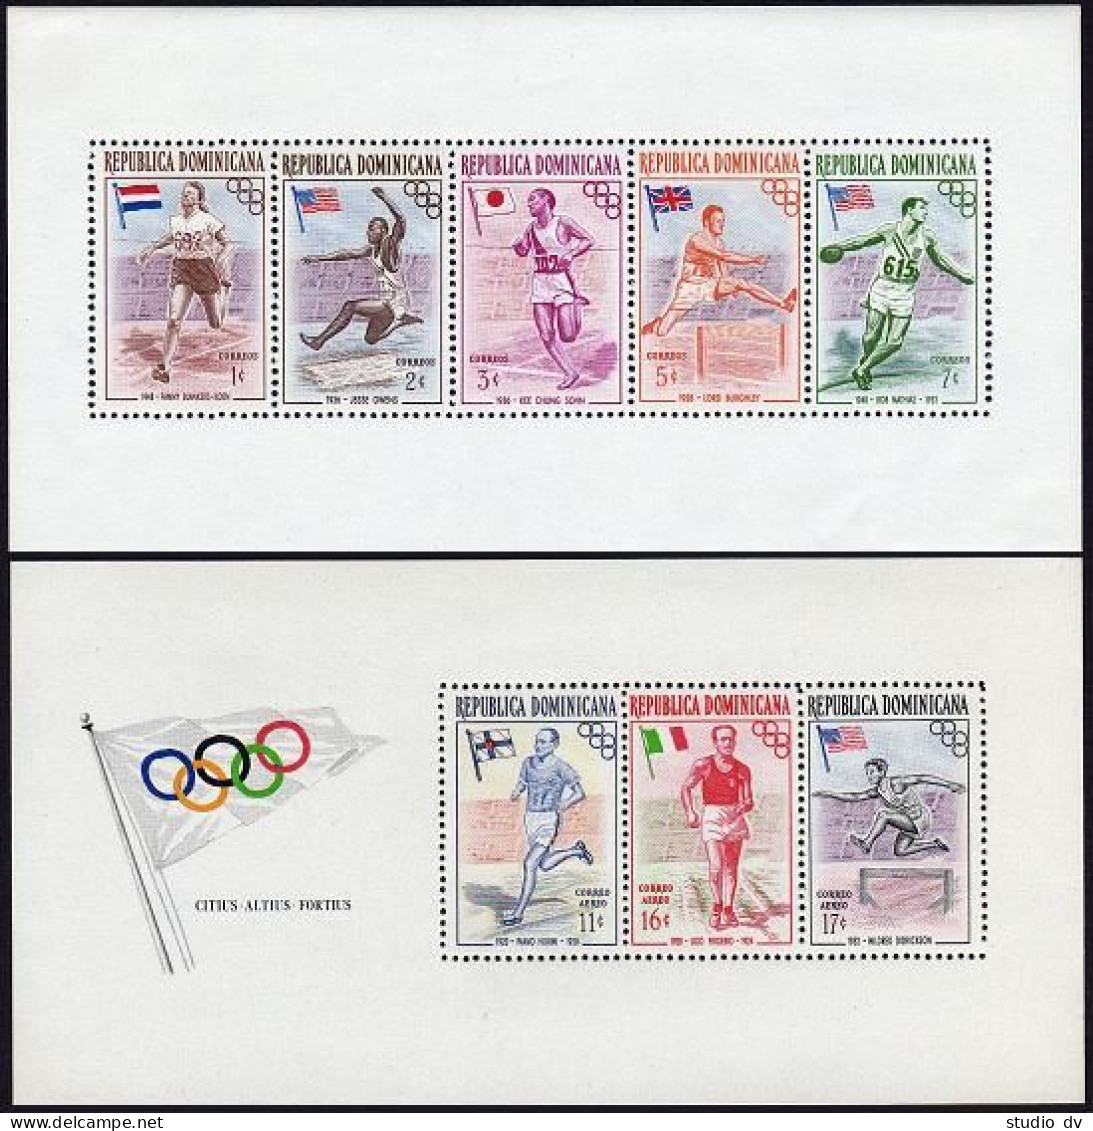 Dominican Rep 478a,C99a A,B,mint.Mi Bl.3A-4A,3B-4B. Olympics Melbourne-1956. - Dominica (1978-...)